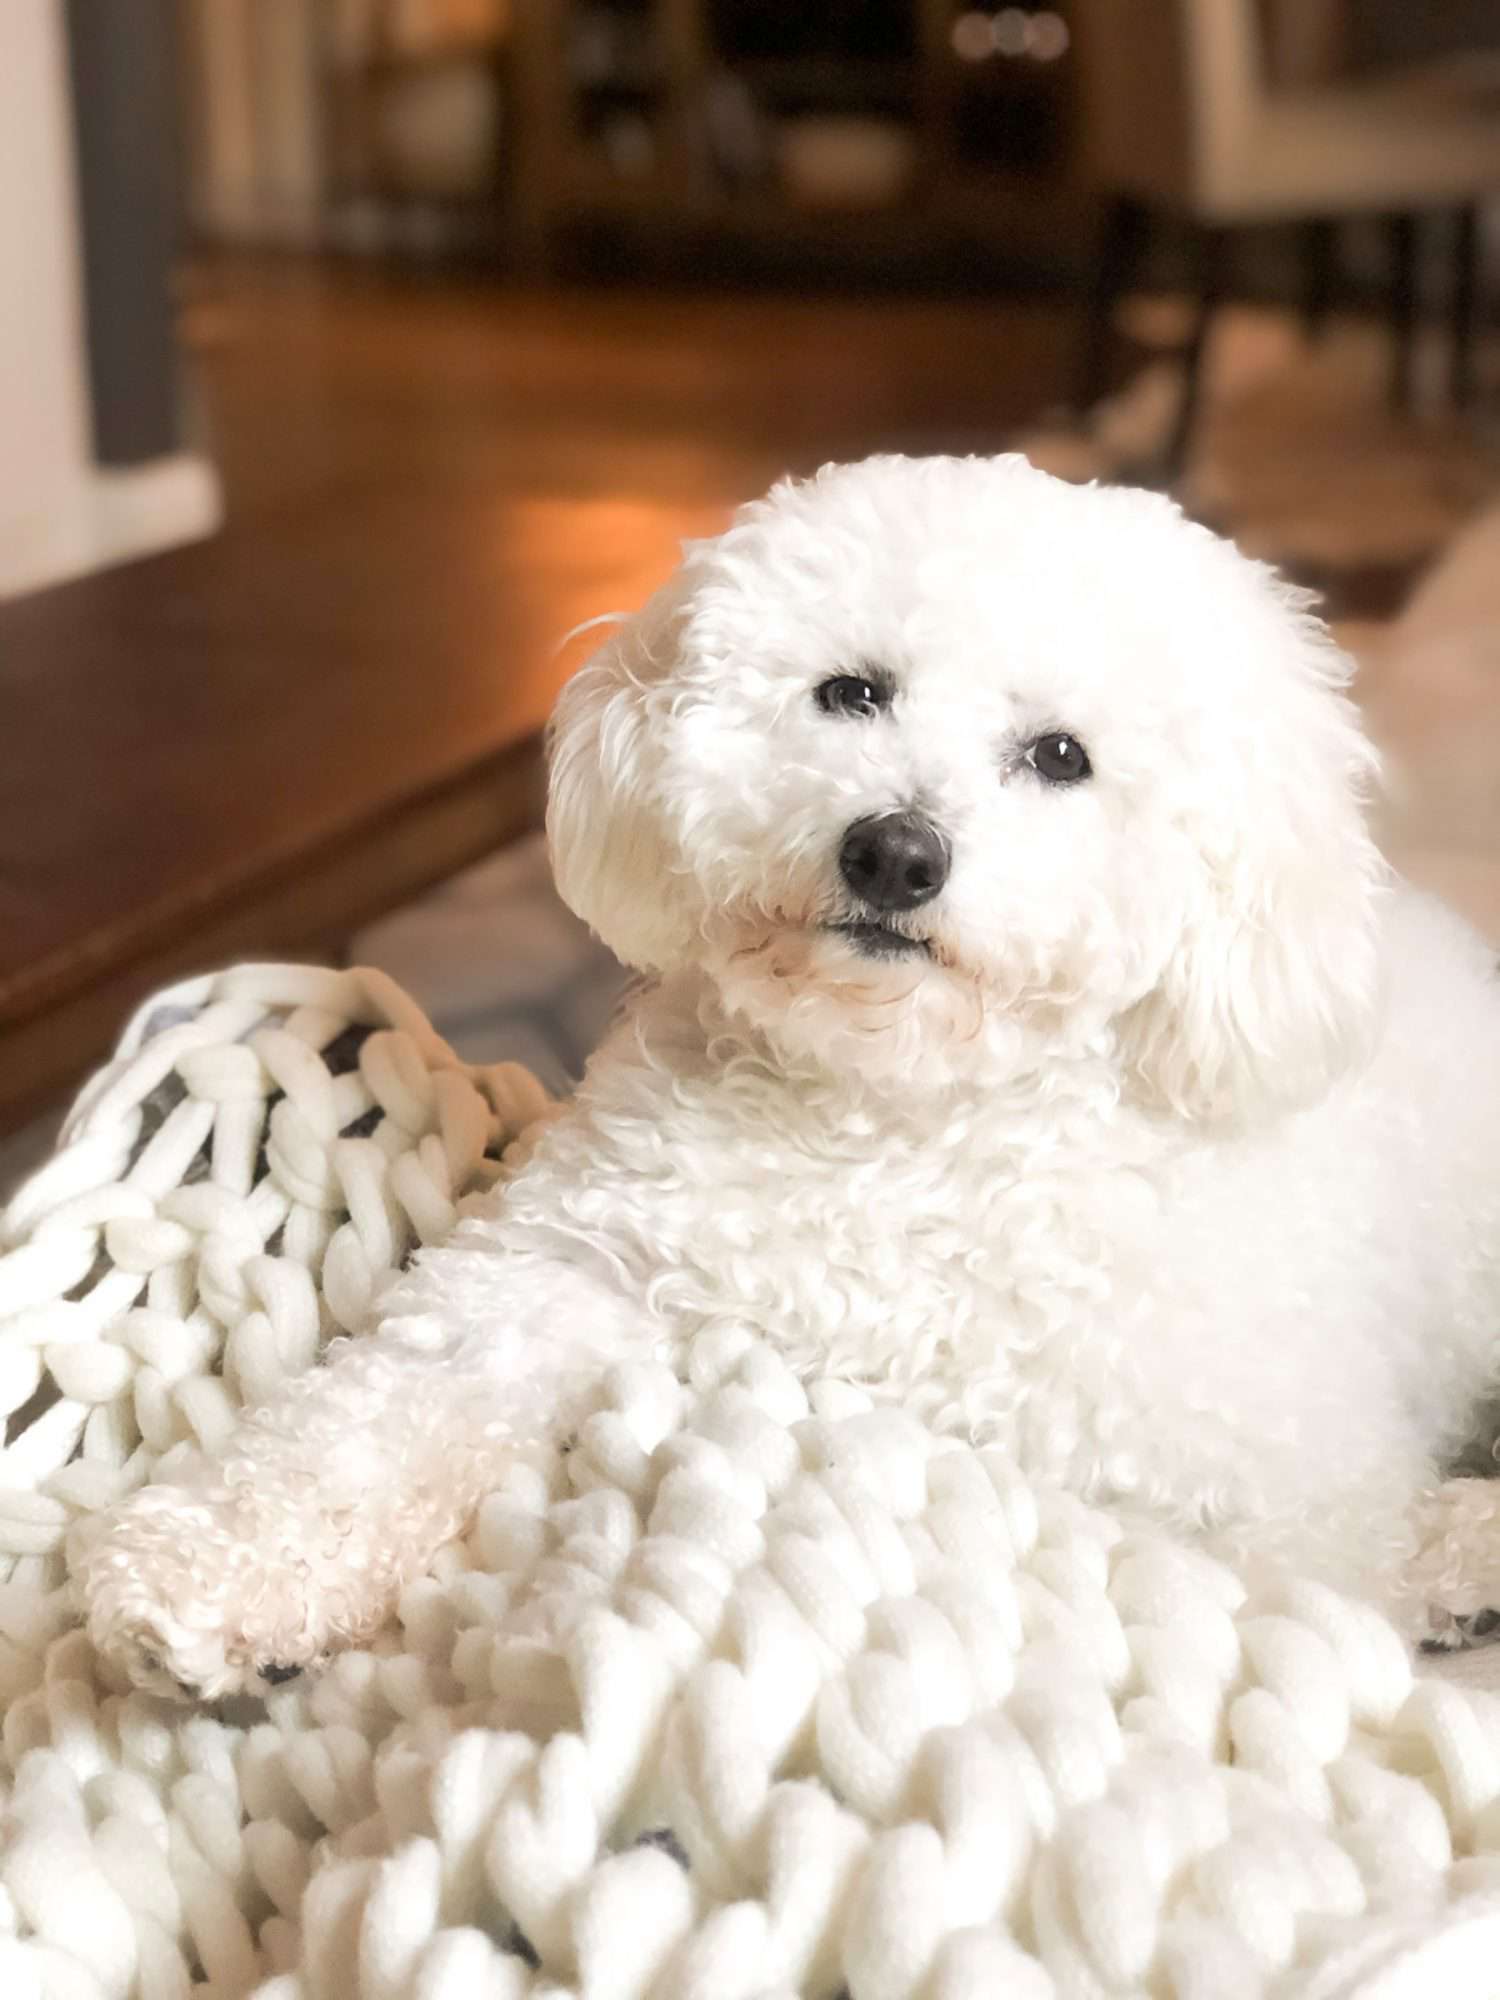 Finn lying on a white braided blanket